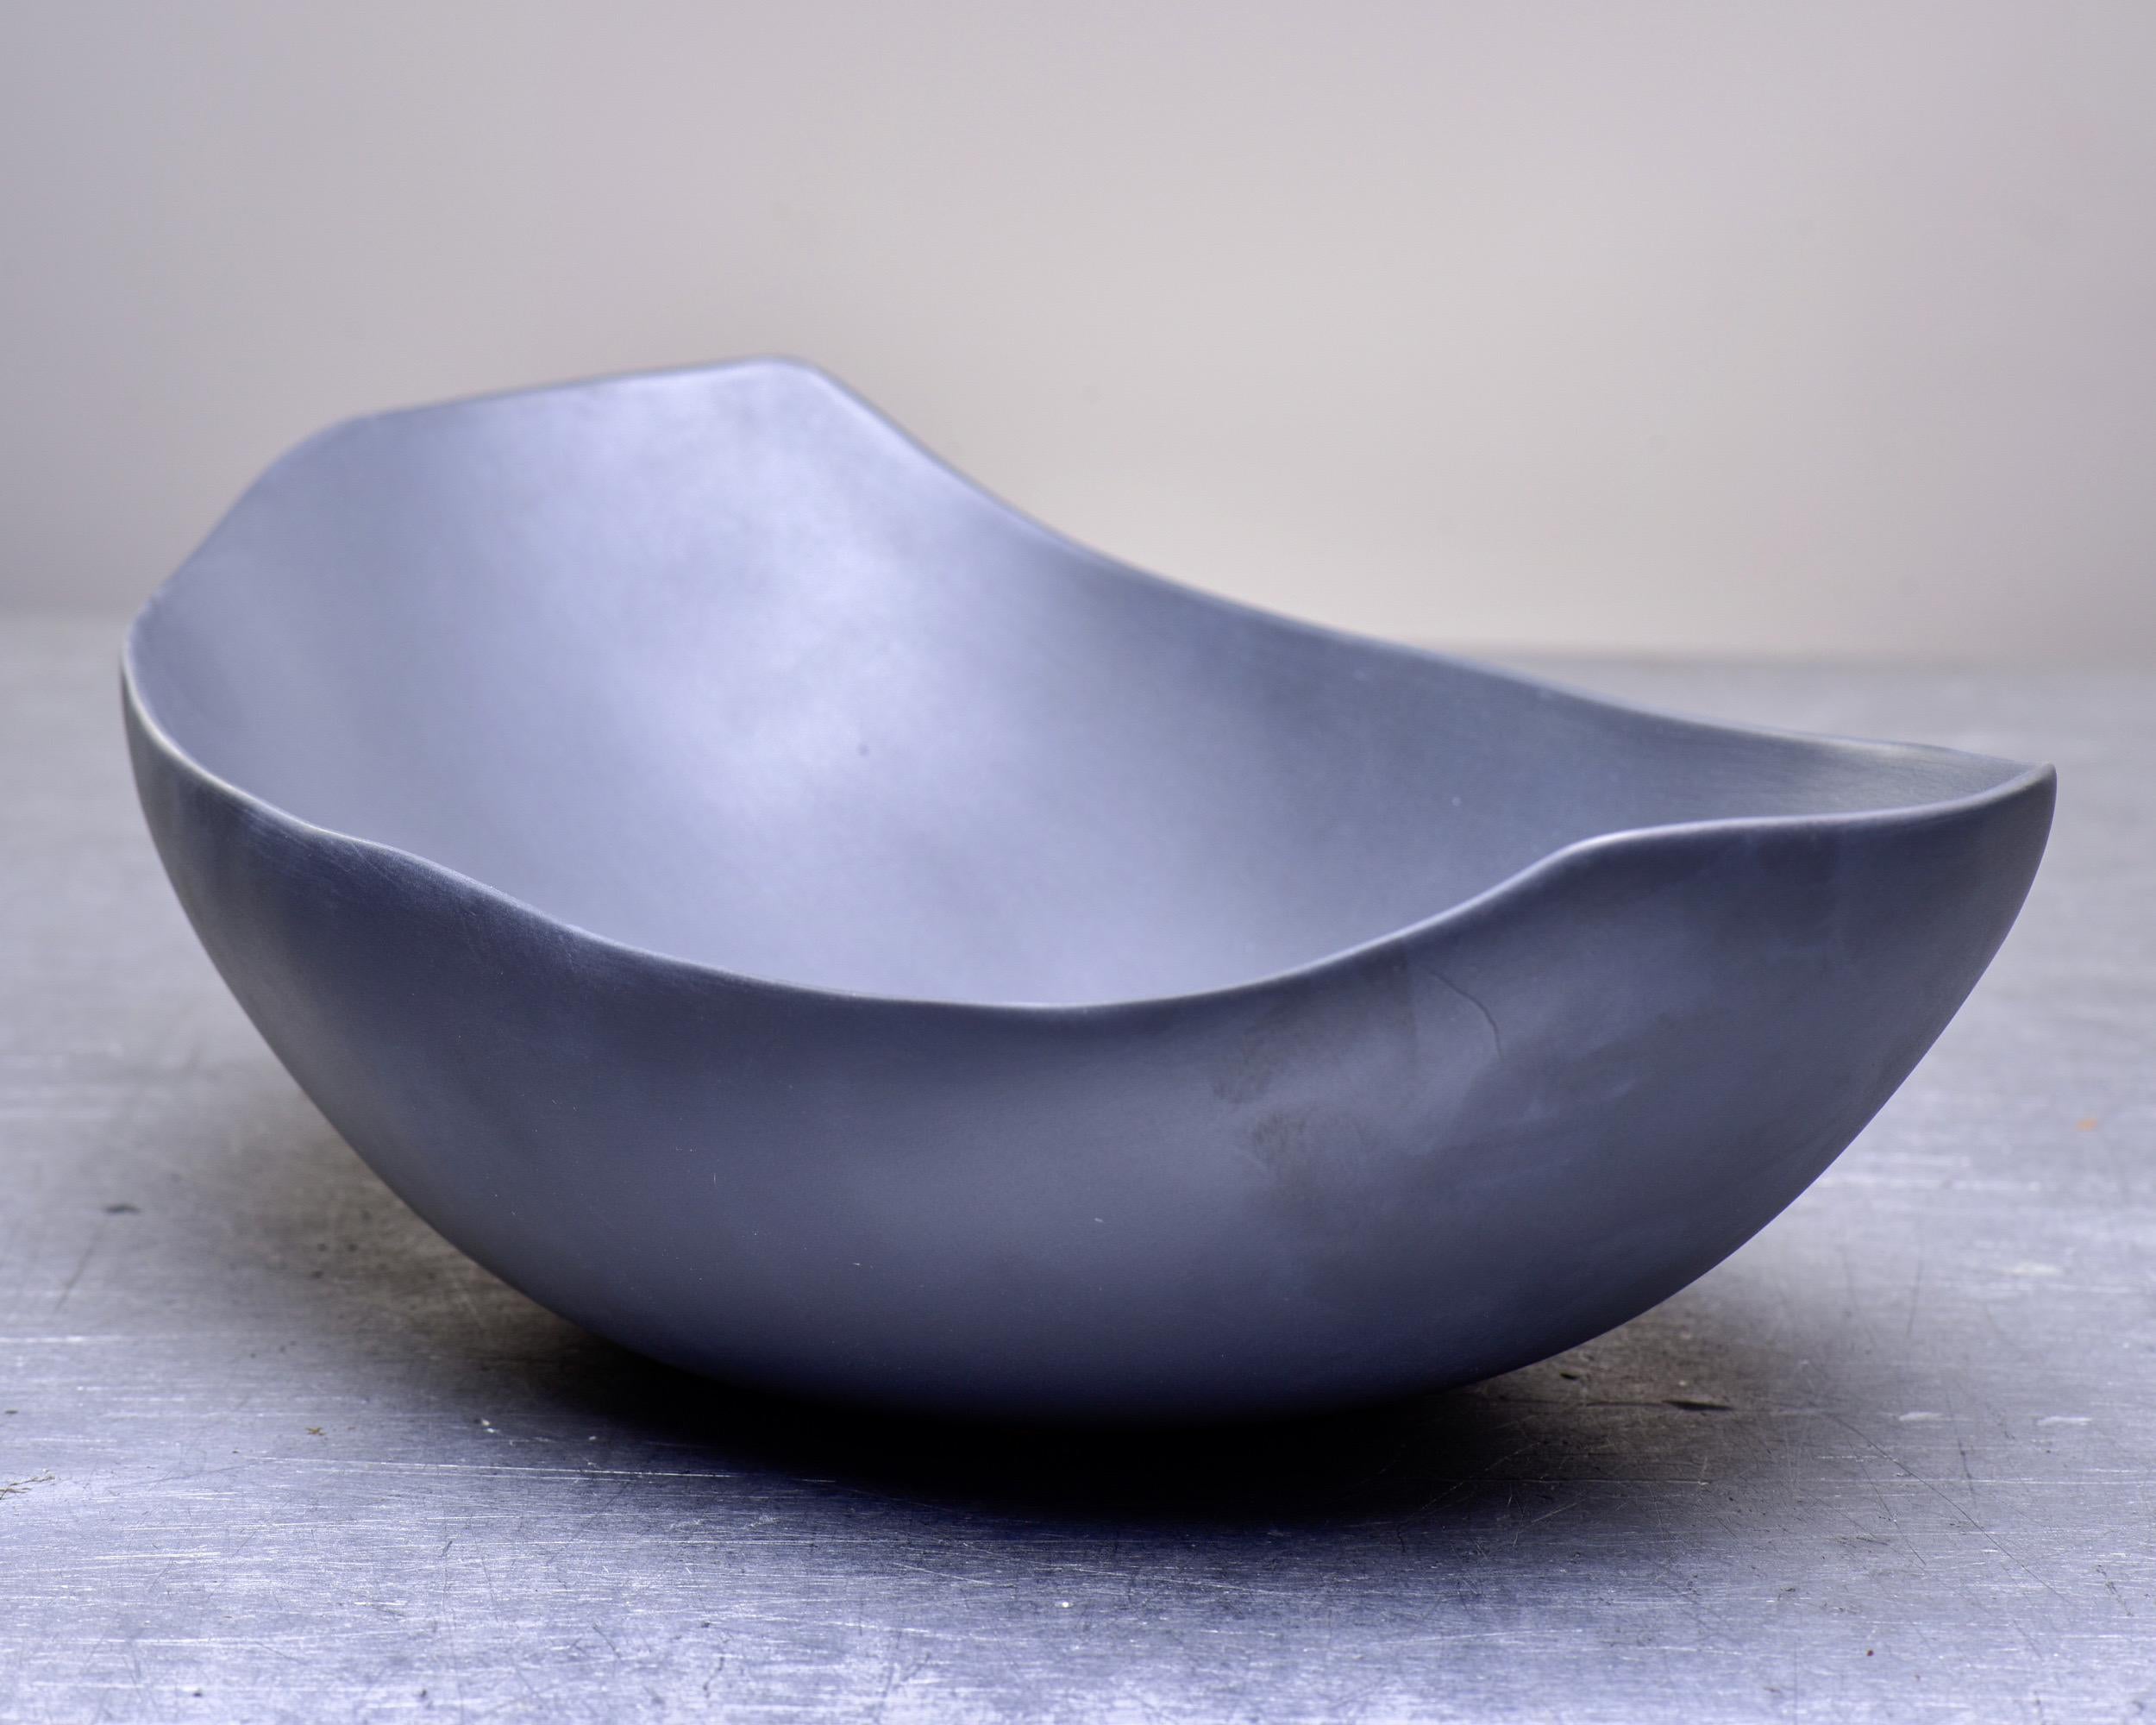 Ceramic Rina Menardi Italian Art Pottery Center Bowl in Graphite Glaze